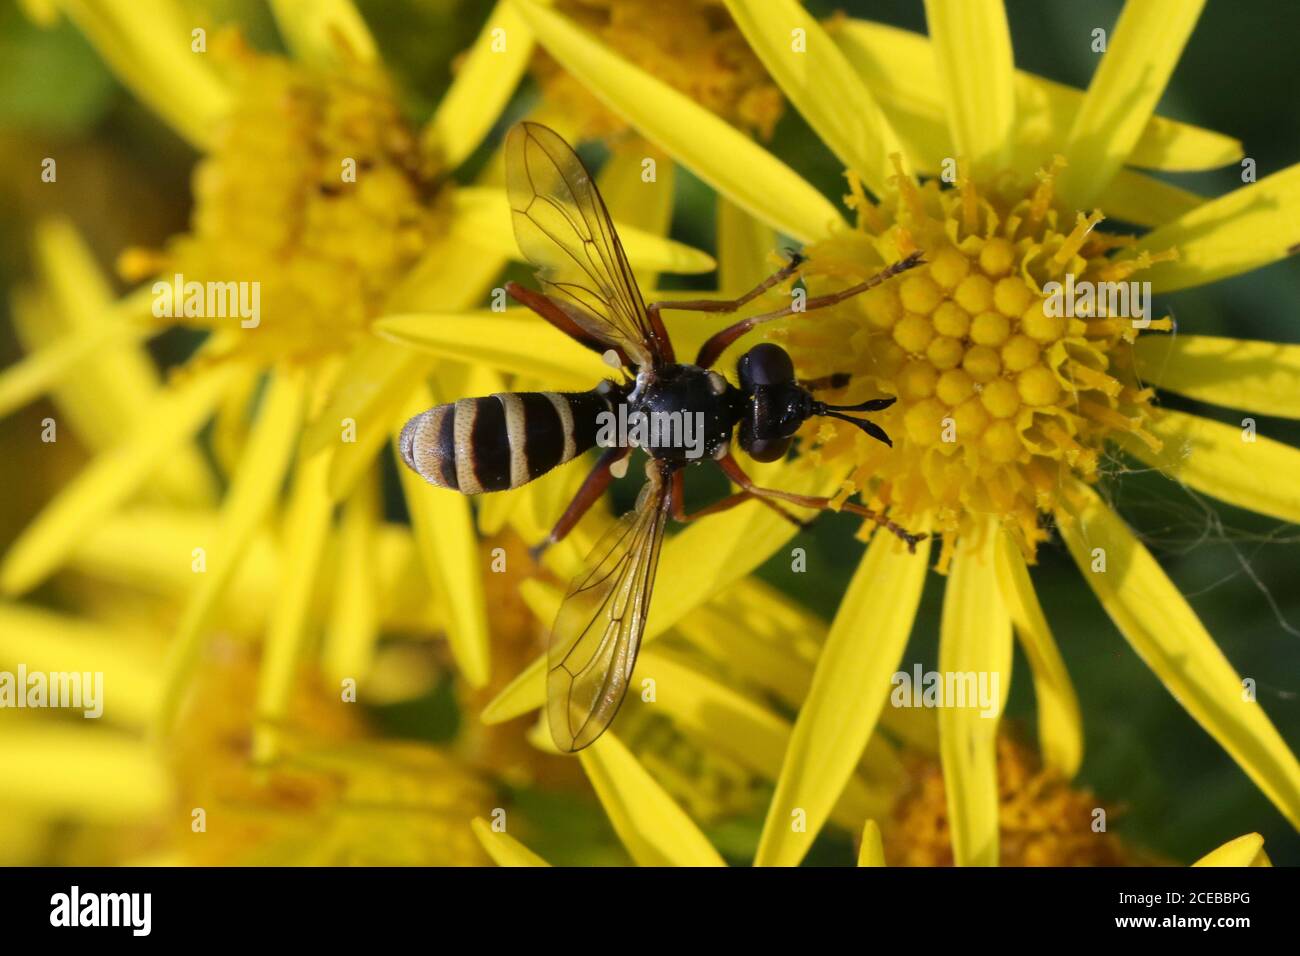 Un mâle CONOPS quadrifasciatus, souvent appelé CONOPS à bandes jaunes, endoparasite des abeilles bumlebees, pris à Hunterston, dans le Ayrshire. Banque D'Images